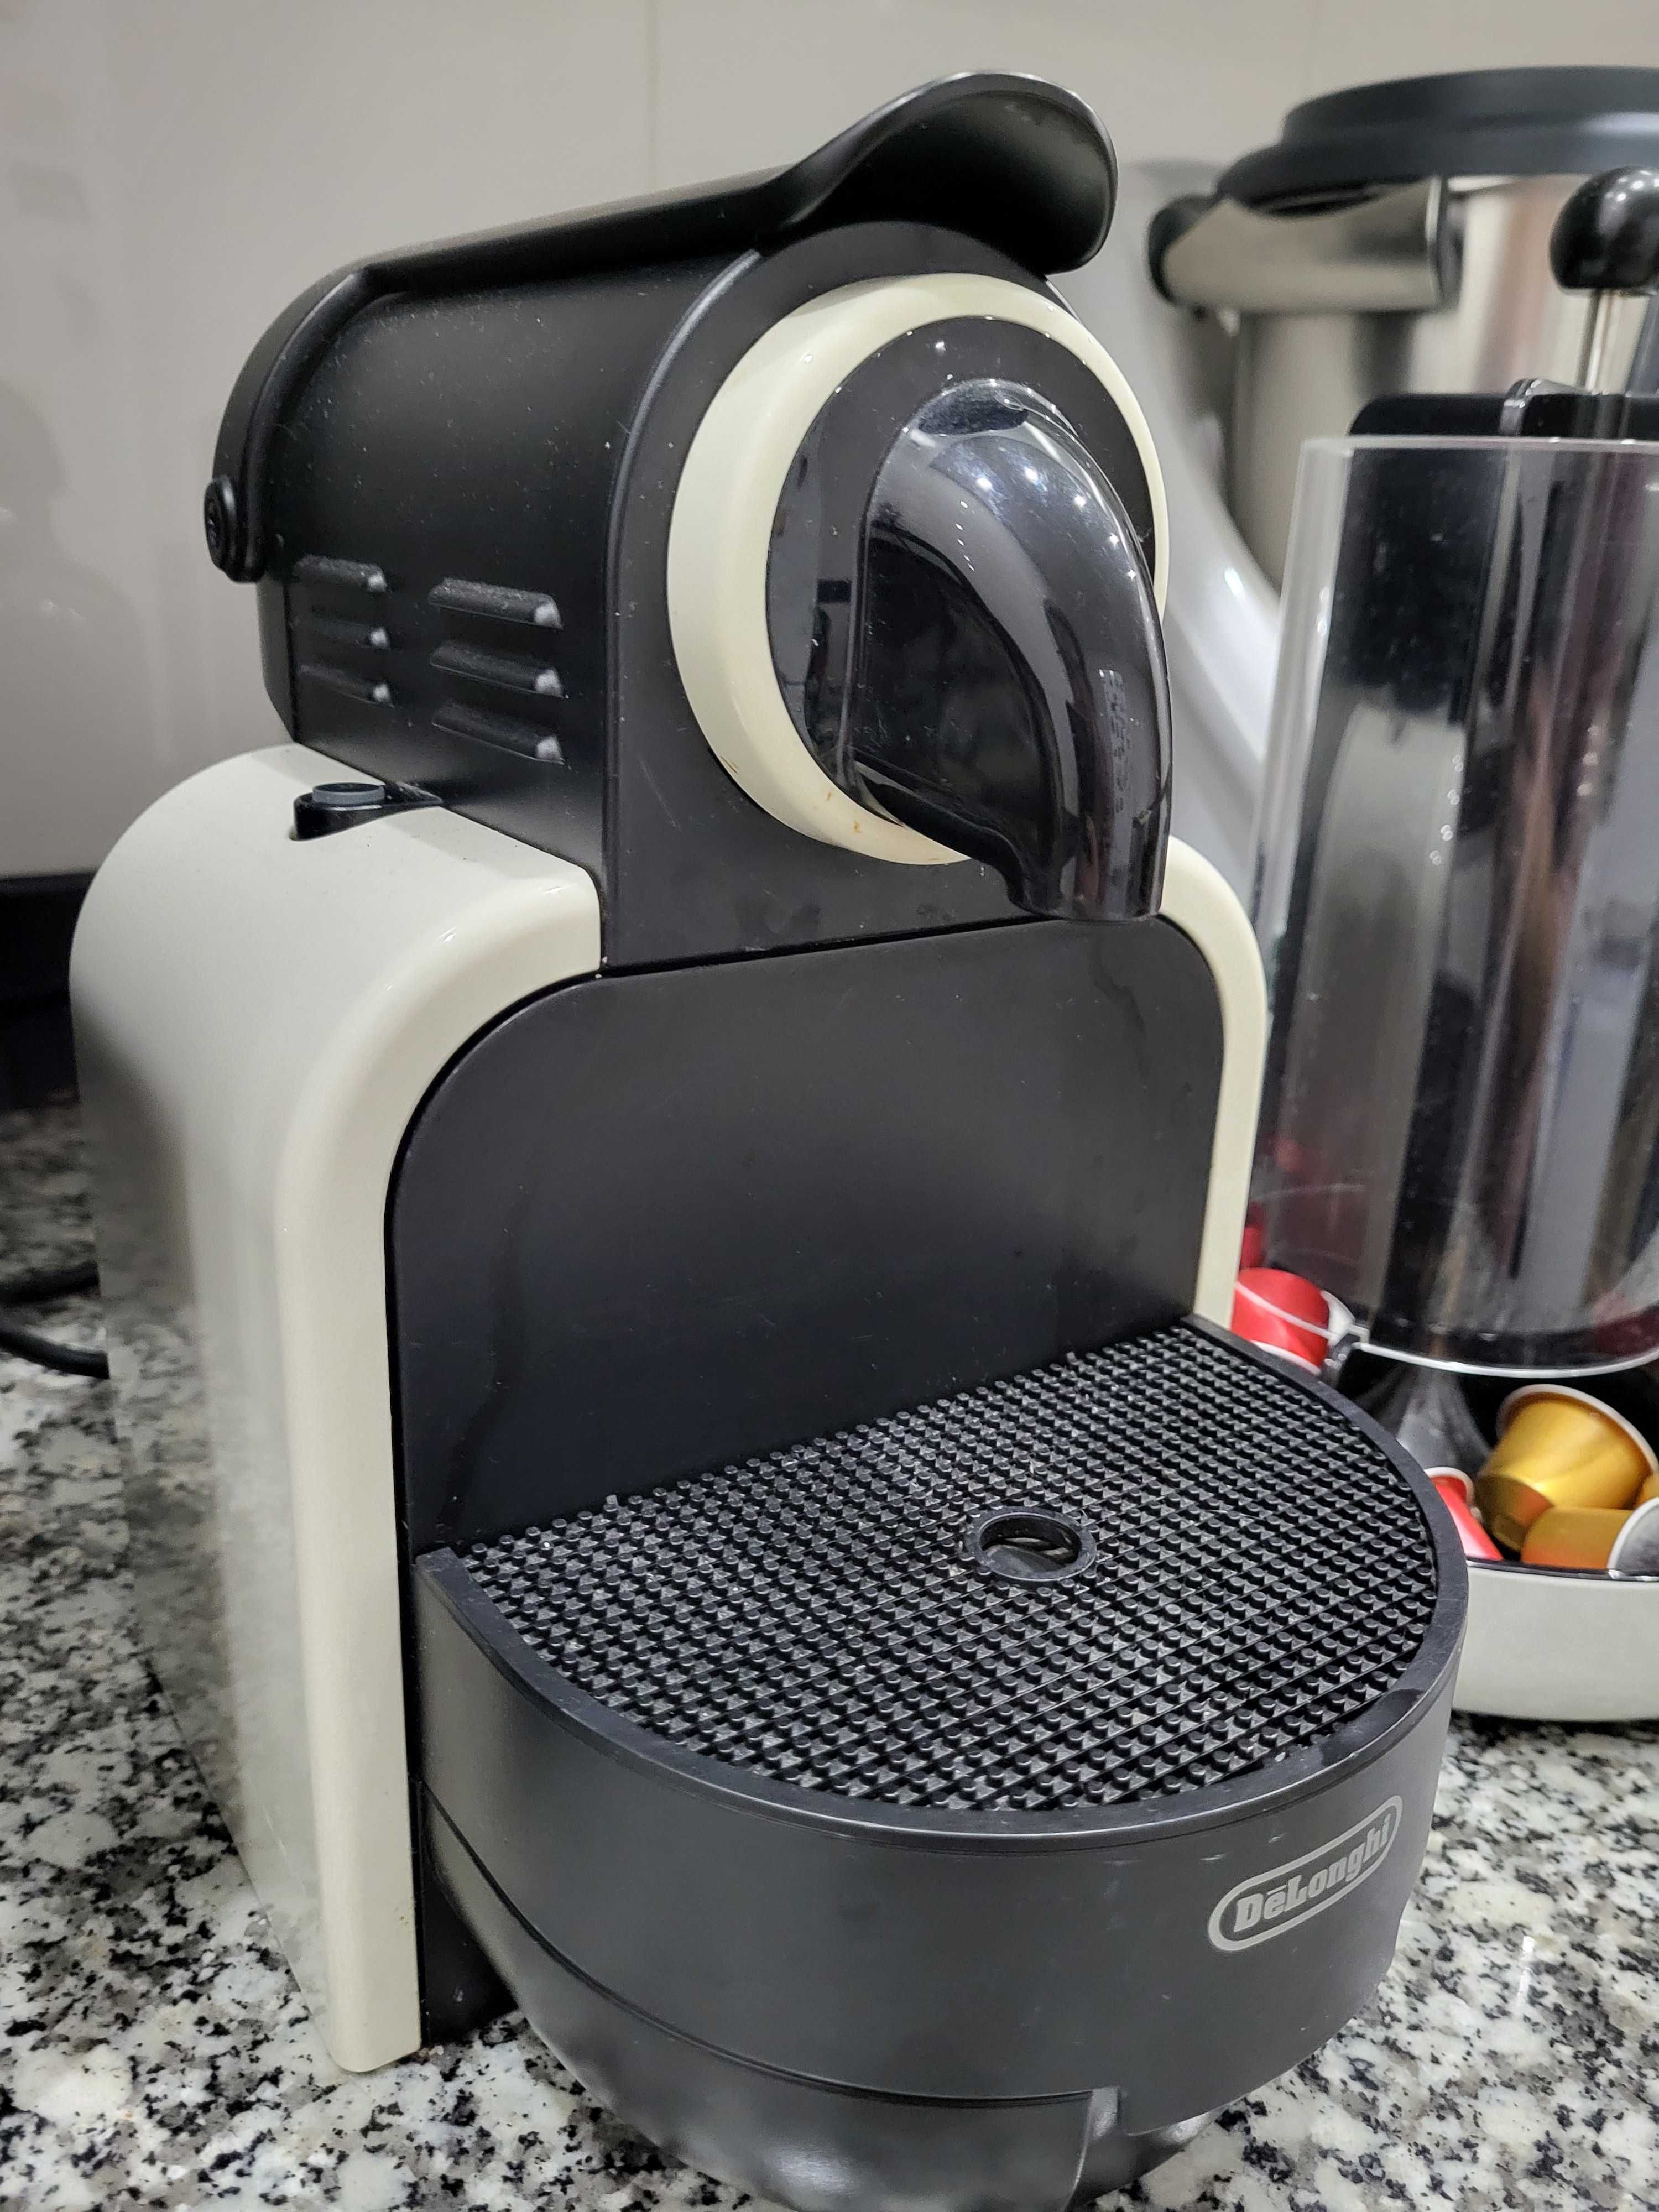 Máquina café nespresso